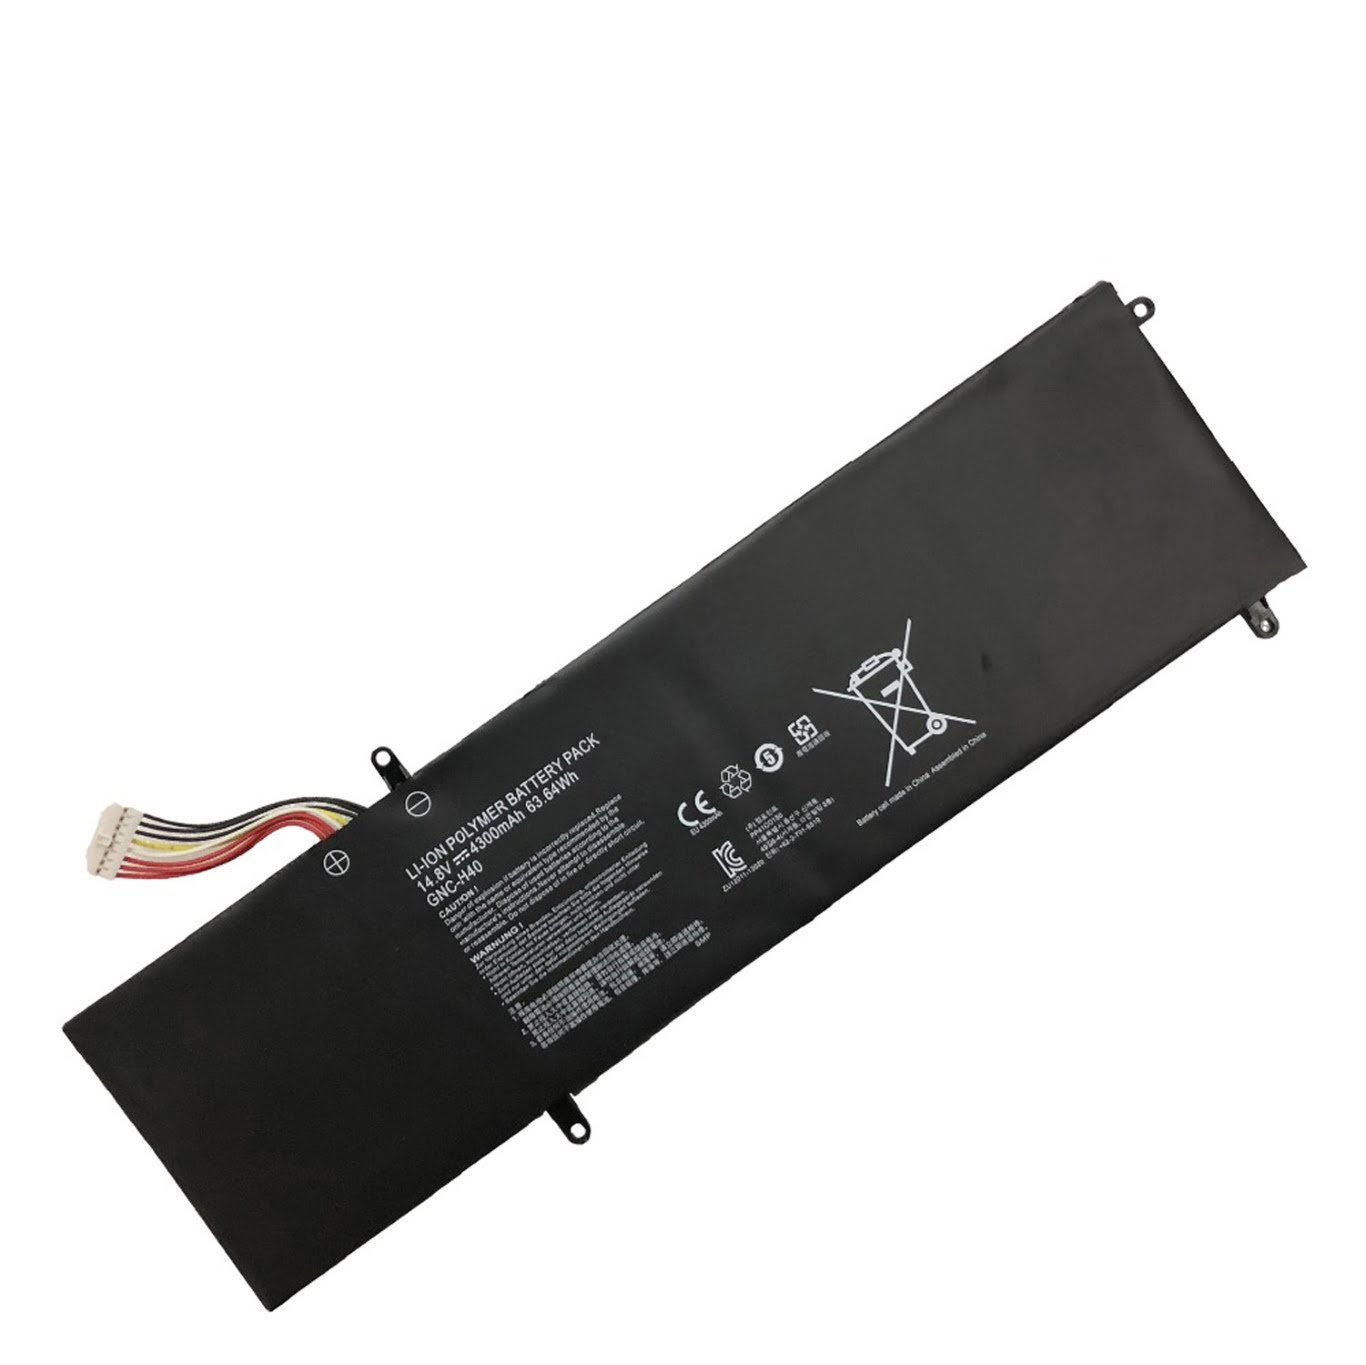 GNC-H40 replacement Laptop Battery for Gigabyte P34, V2, 14.8V, 4300mah / 63.64wh